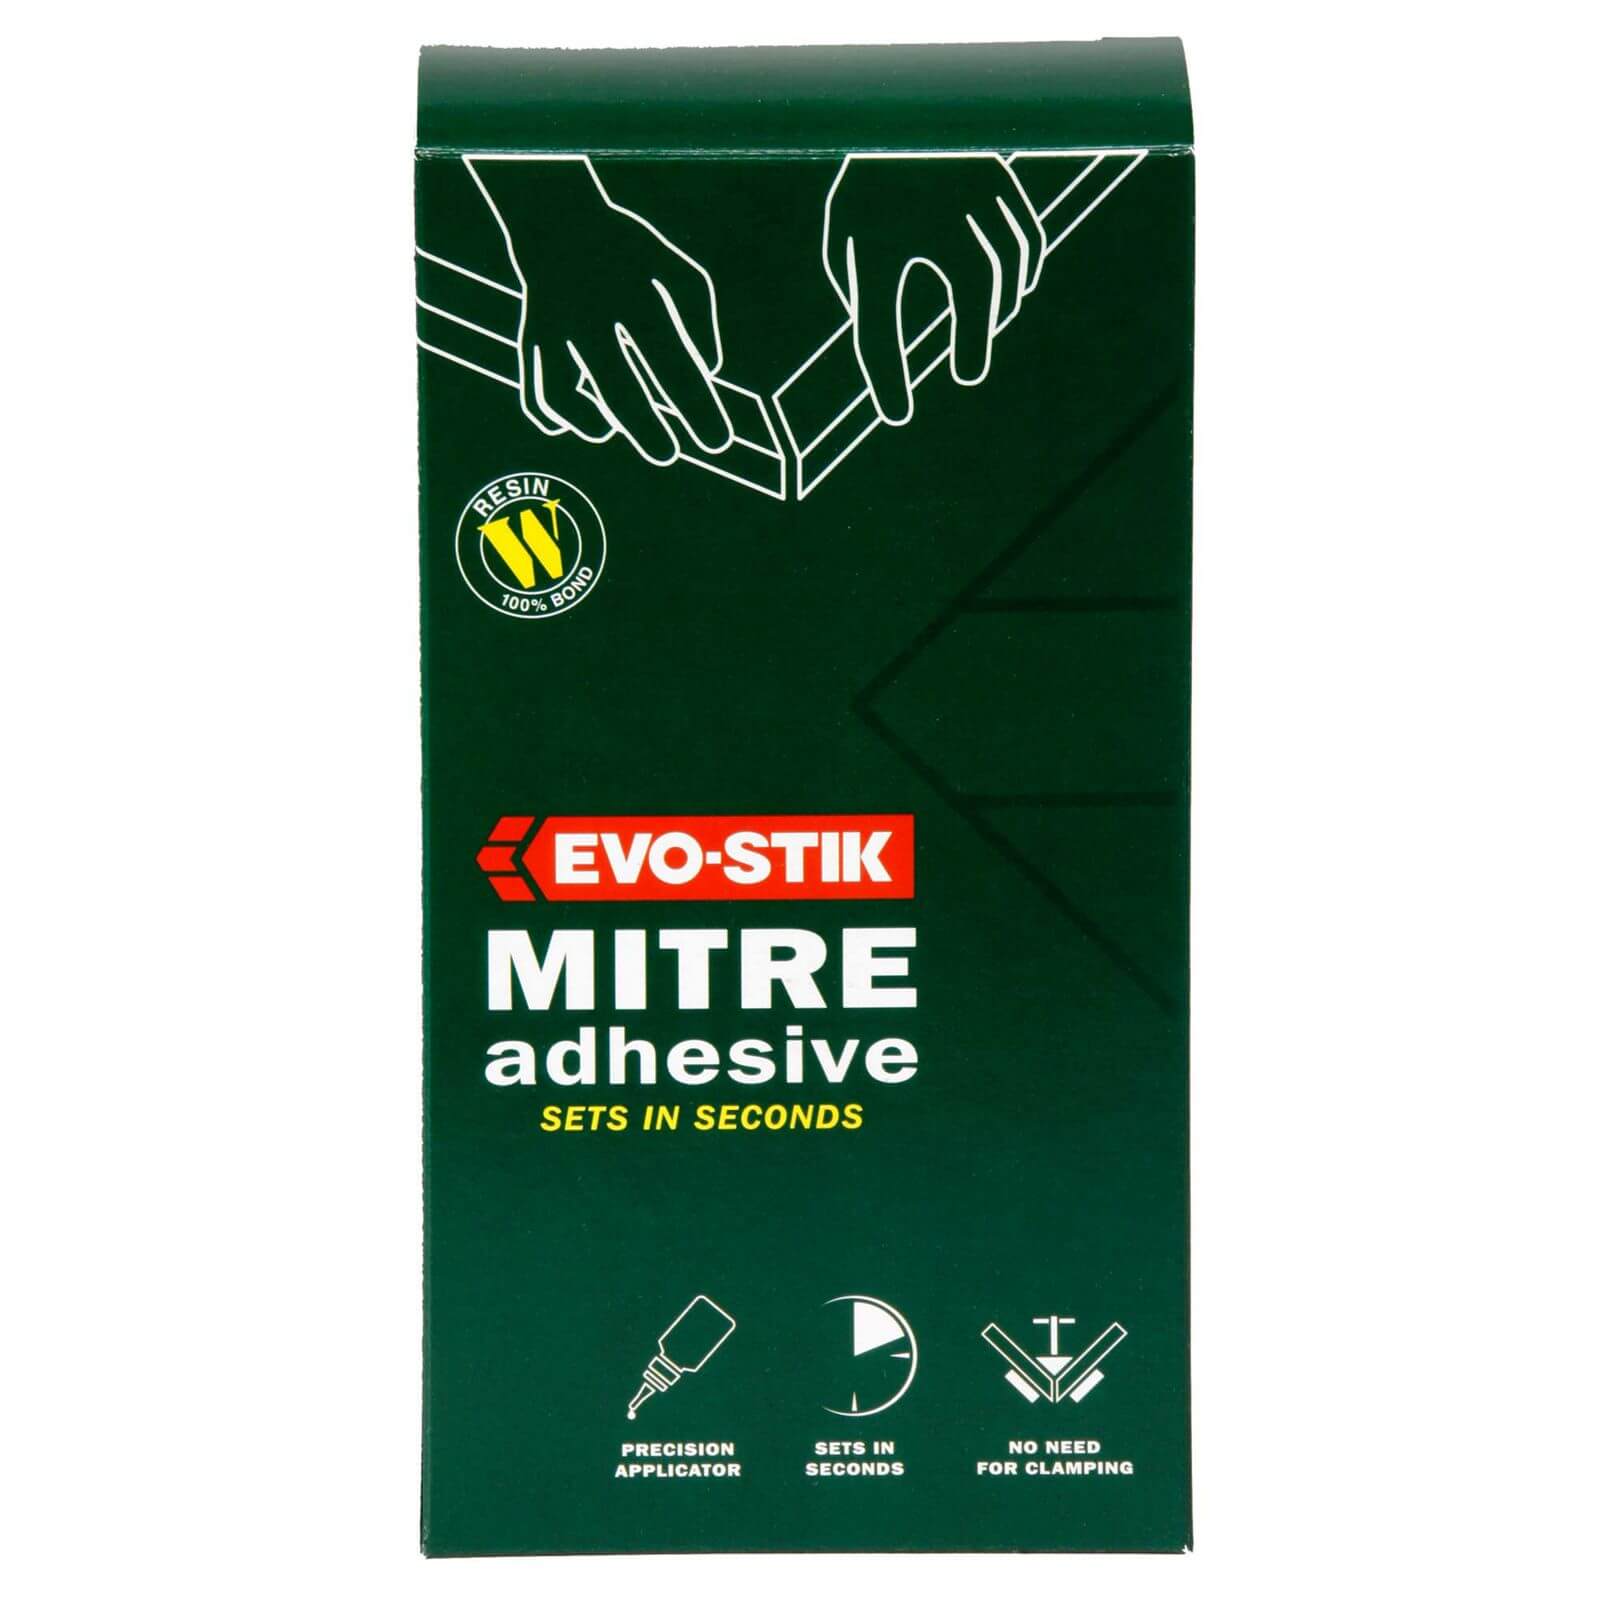 Evo-Stik Mitre Adhesive Kit - 50g